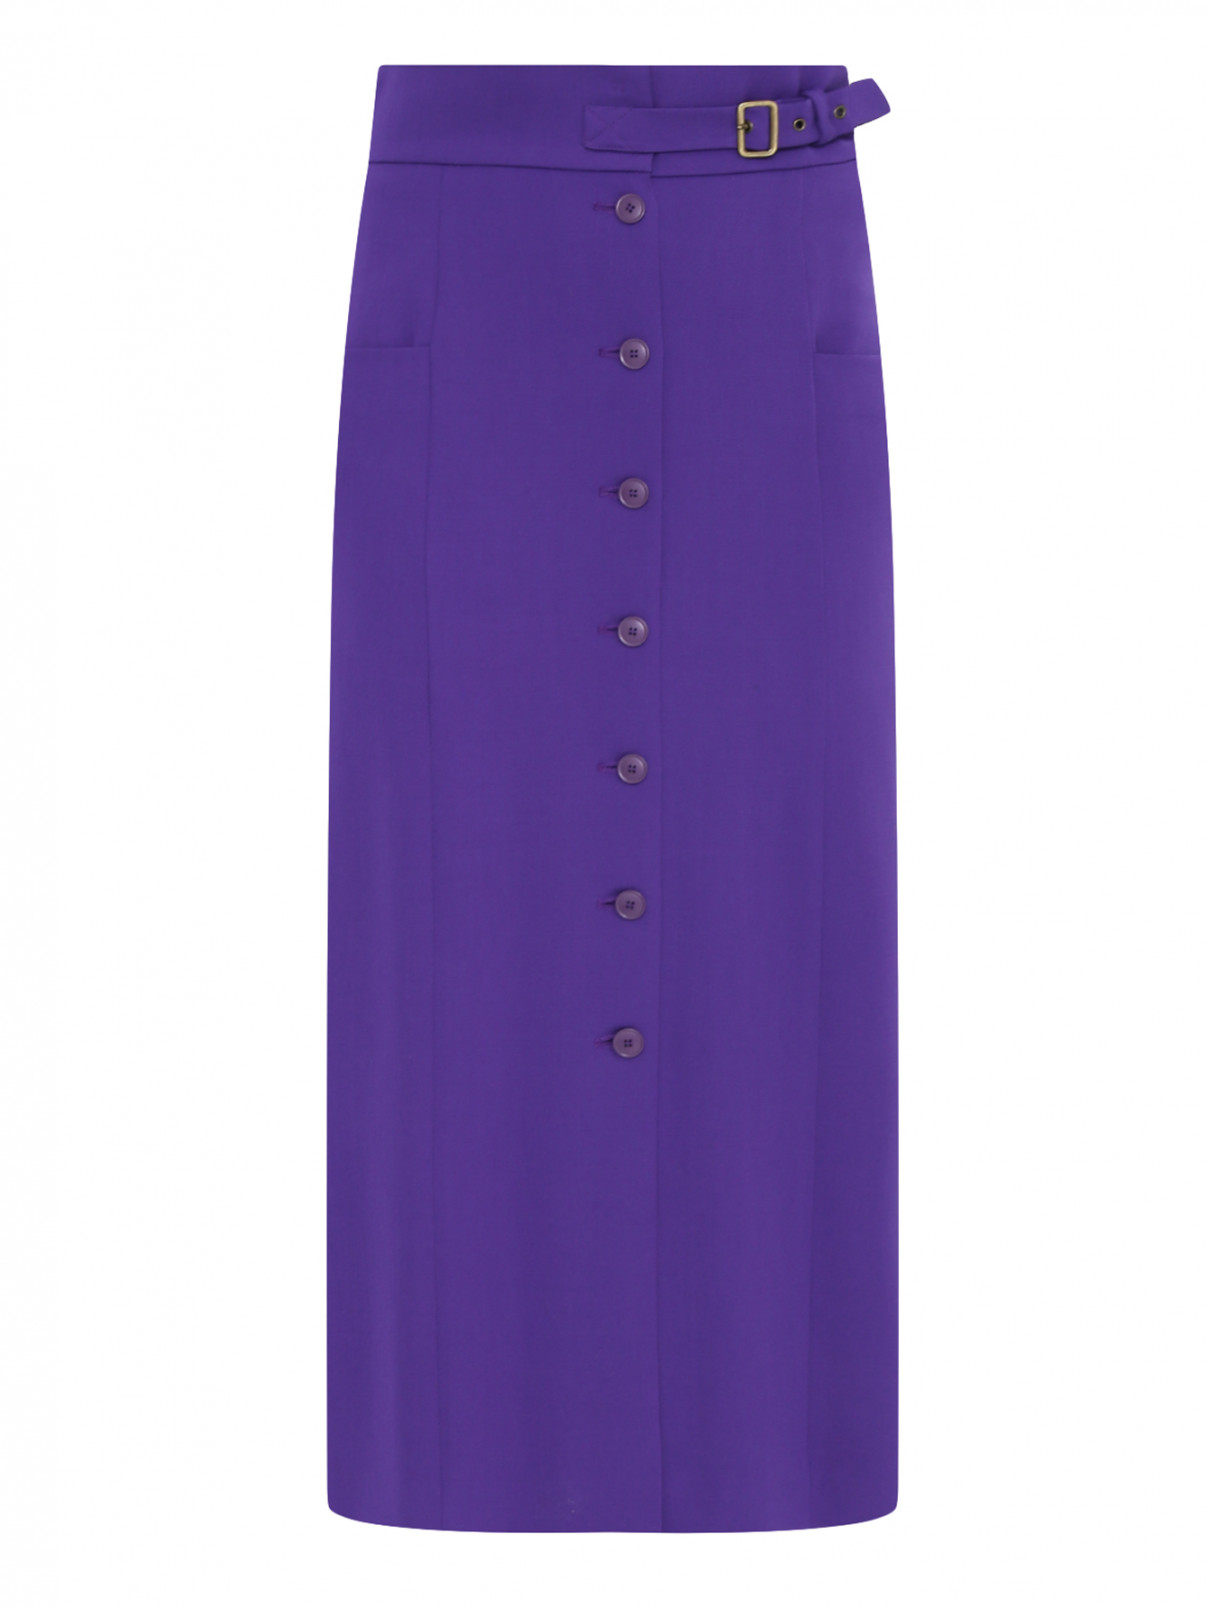 Юбка на высокой талии из шерсти с накладными карманами Alberta Ferretti  –  Общий вид  – Цвет:  Фиолетовый